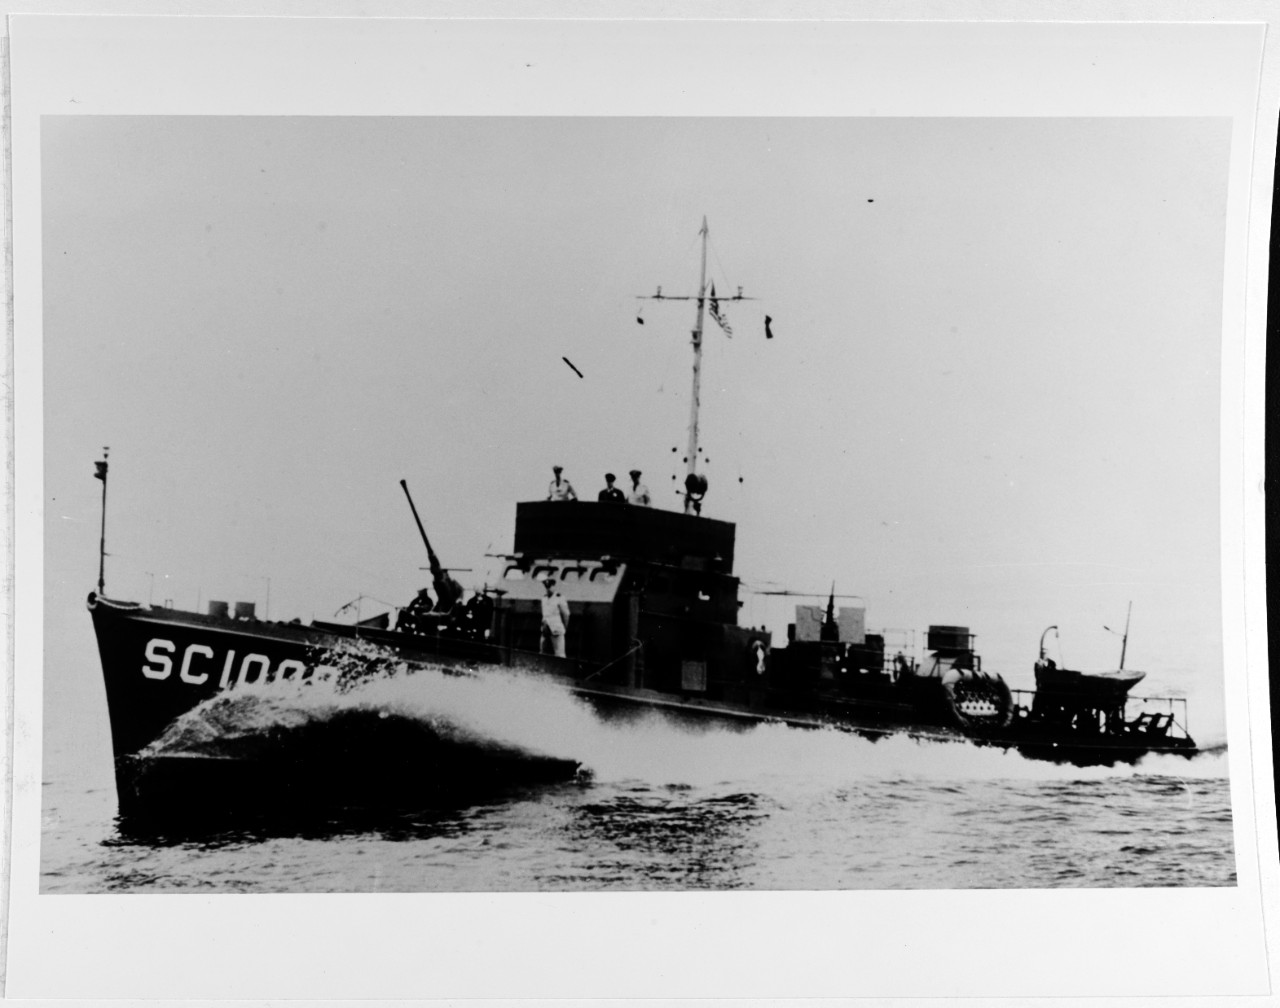 USS SC-1009